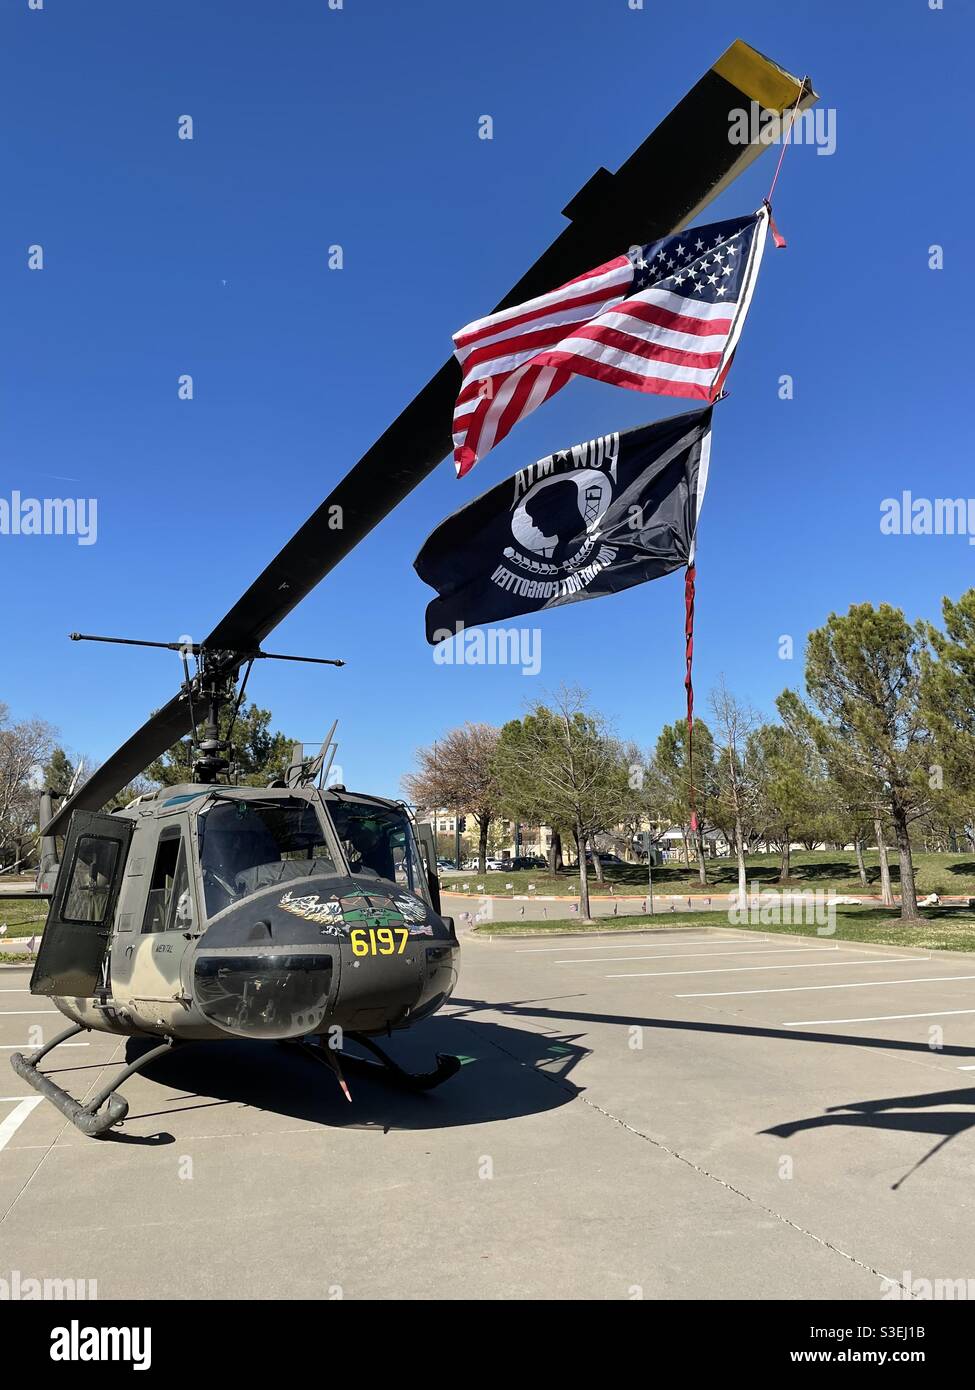 Elicottero d'epoca Vietnam "Huey" un Bell UH-1 Iroquois, Huey 197 è stato assegnato alla compagnia di assalto aereo in Vietnam da ottobre ‘68 a ‘71. Vengono visualizzati i flag US e POW mia. Foto Stock